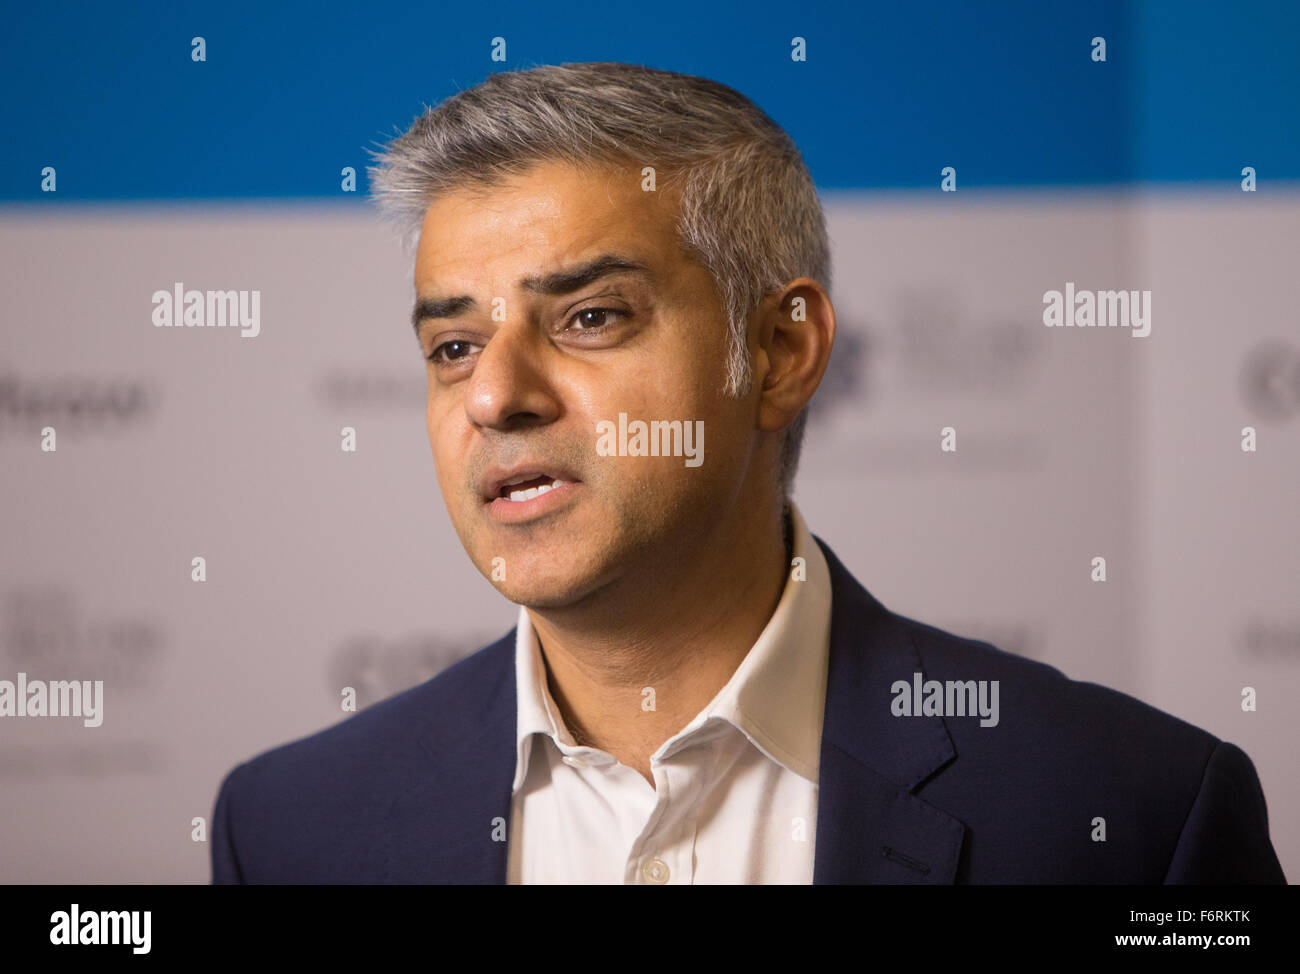 Candidato a la alcaldía de Londres por trabajo,Sadiq Khan, habla en un evento acerca de sus planes para Londres,si es elegido Foto de stock